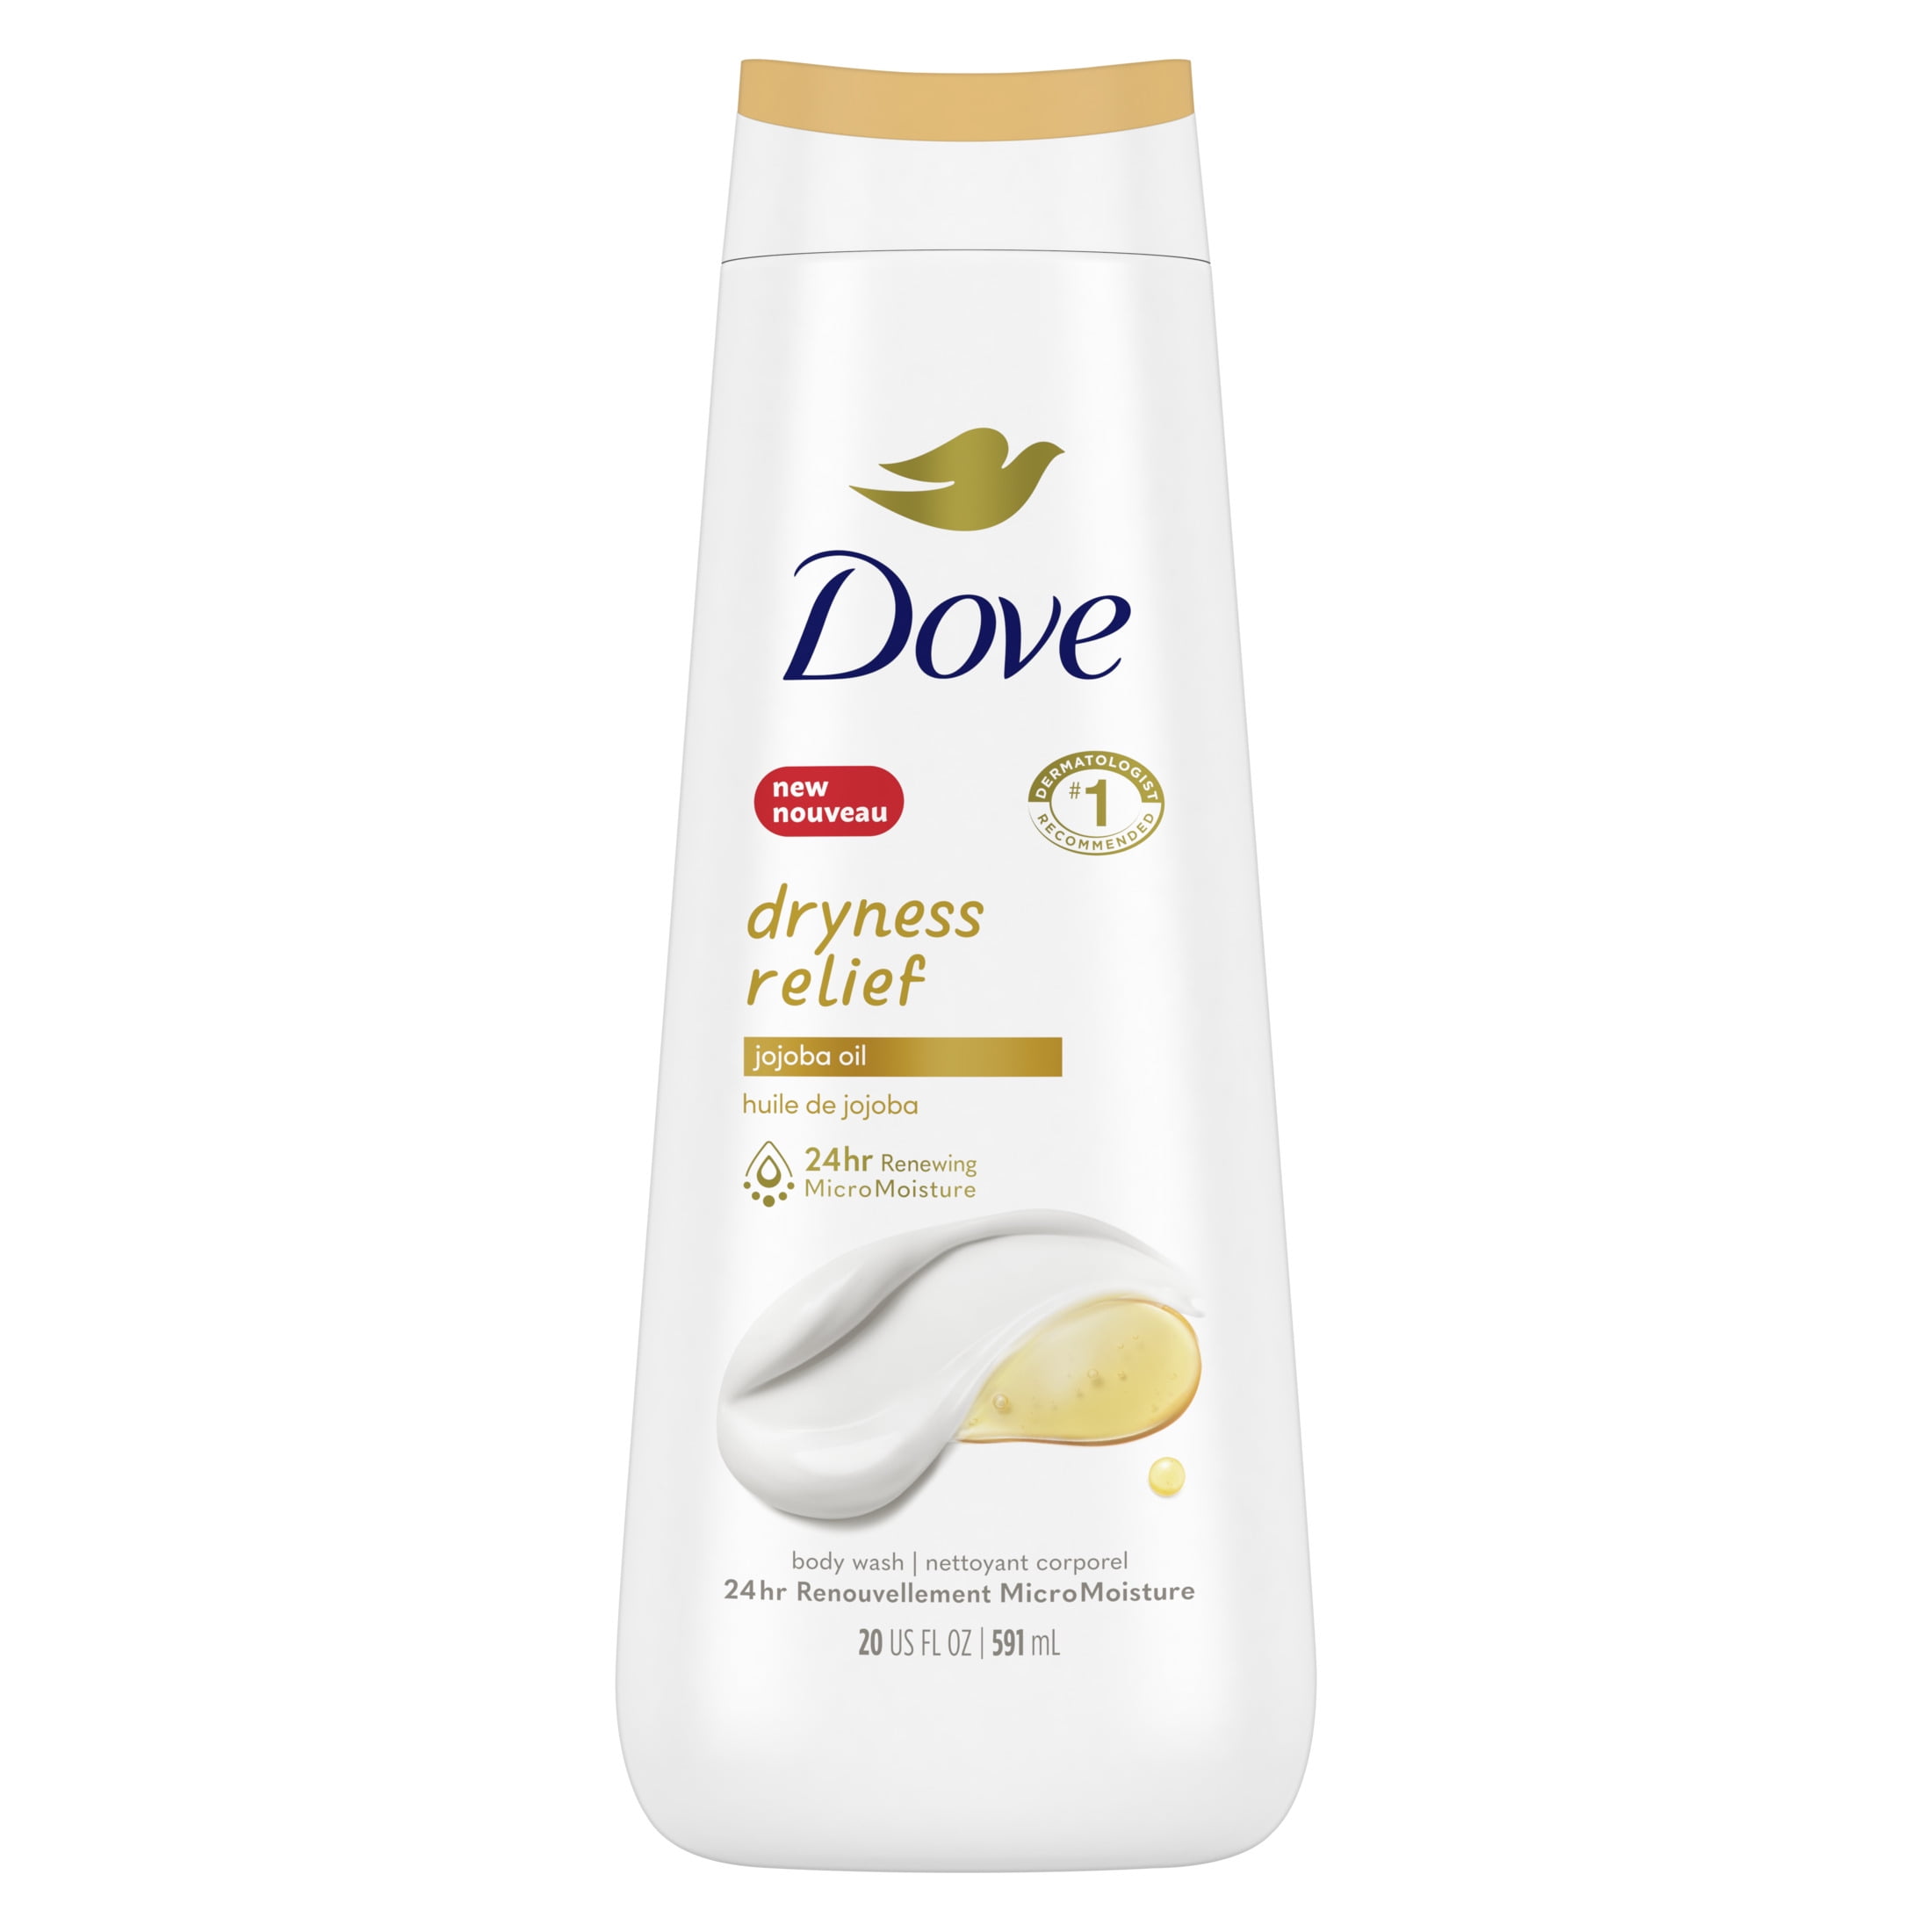 Dove Dryness Relief with Jojoba Oil Body Wash, 20 oz